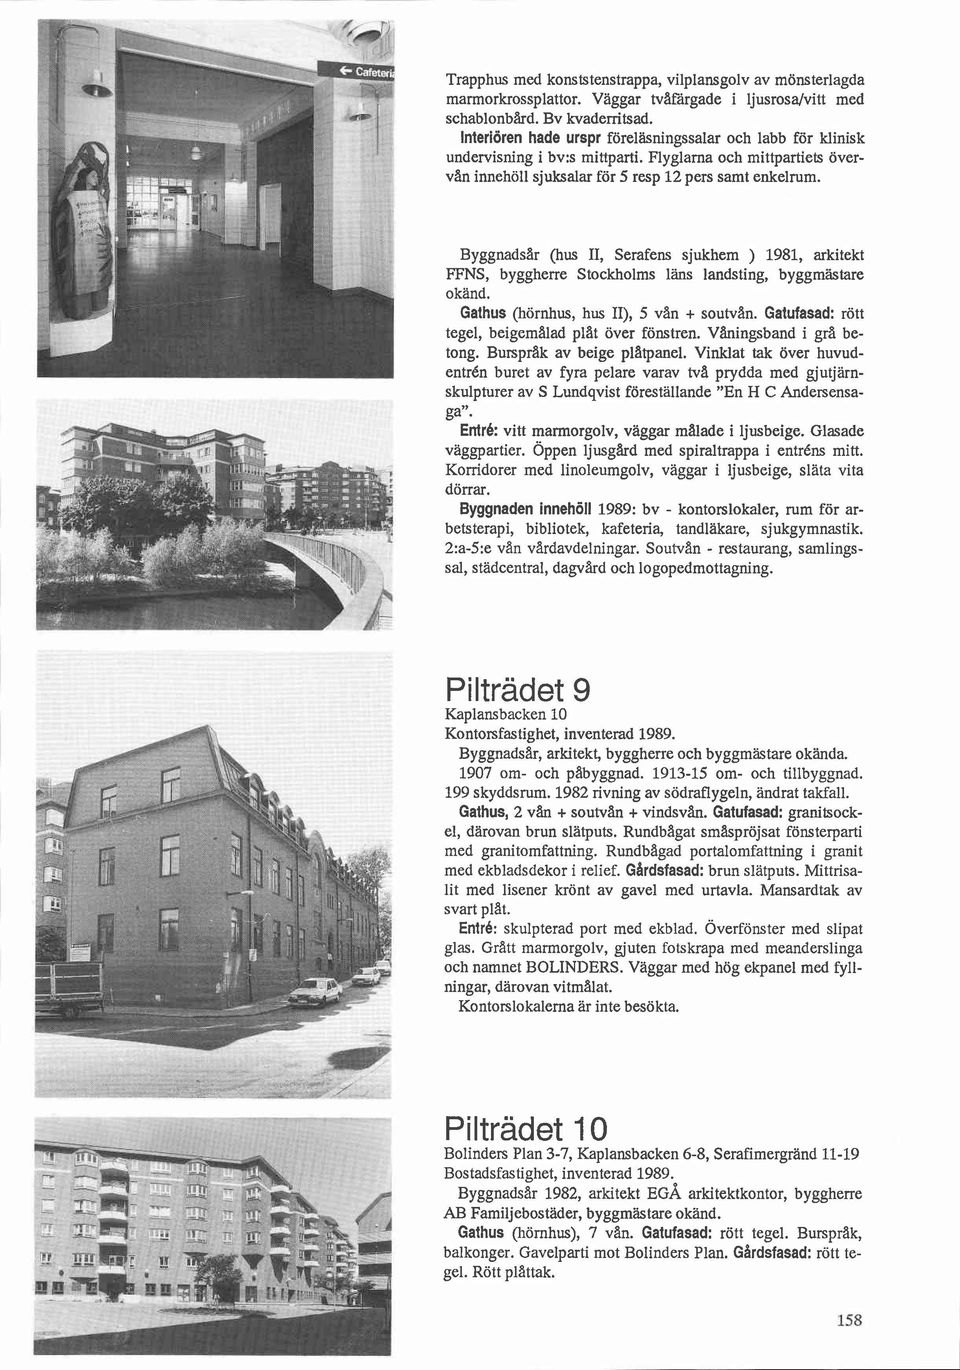 Byggnadsar (hus II, Serafens sjukhem ) 1981, arkitekt FFNS, byggherre Stockholms läns landsting, byggmästare okänd. Gathus (hörnhus, hus II), 5 van + soutvan.